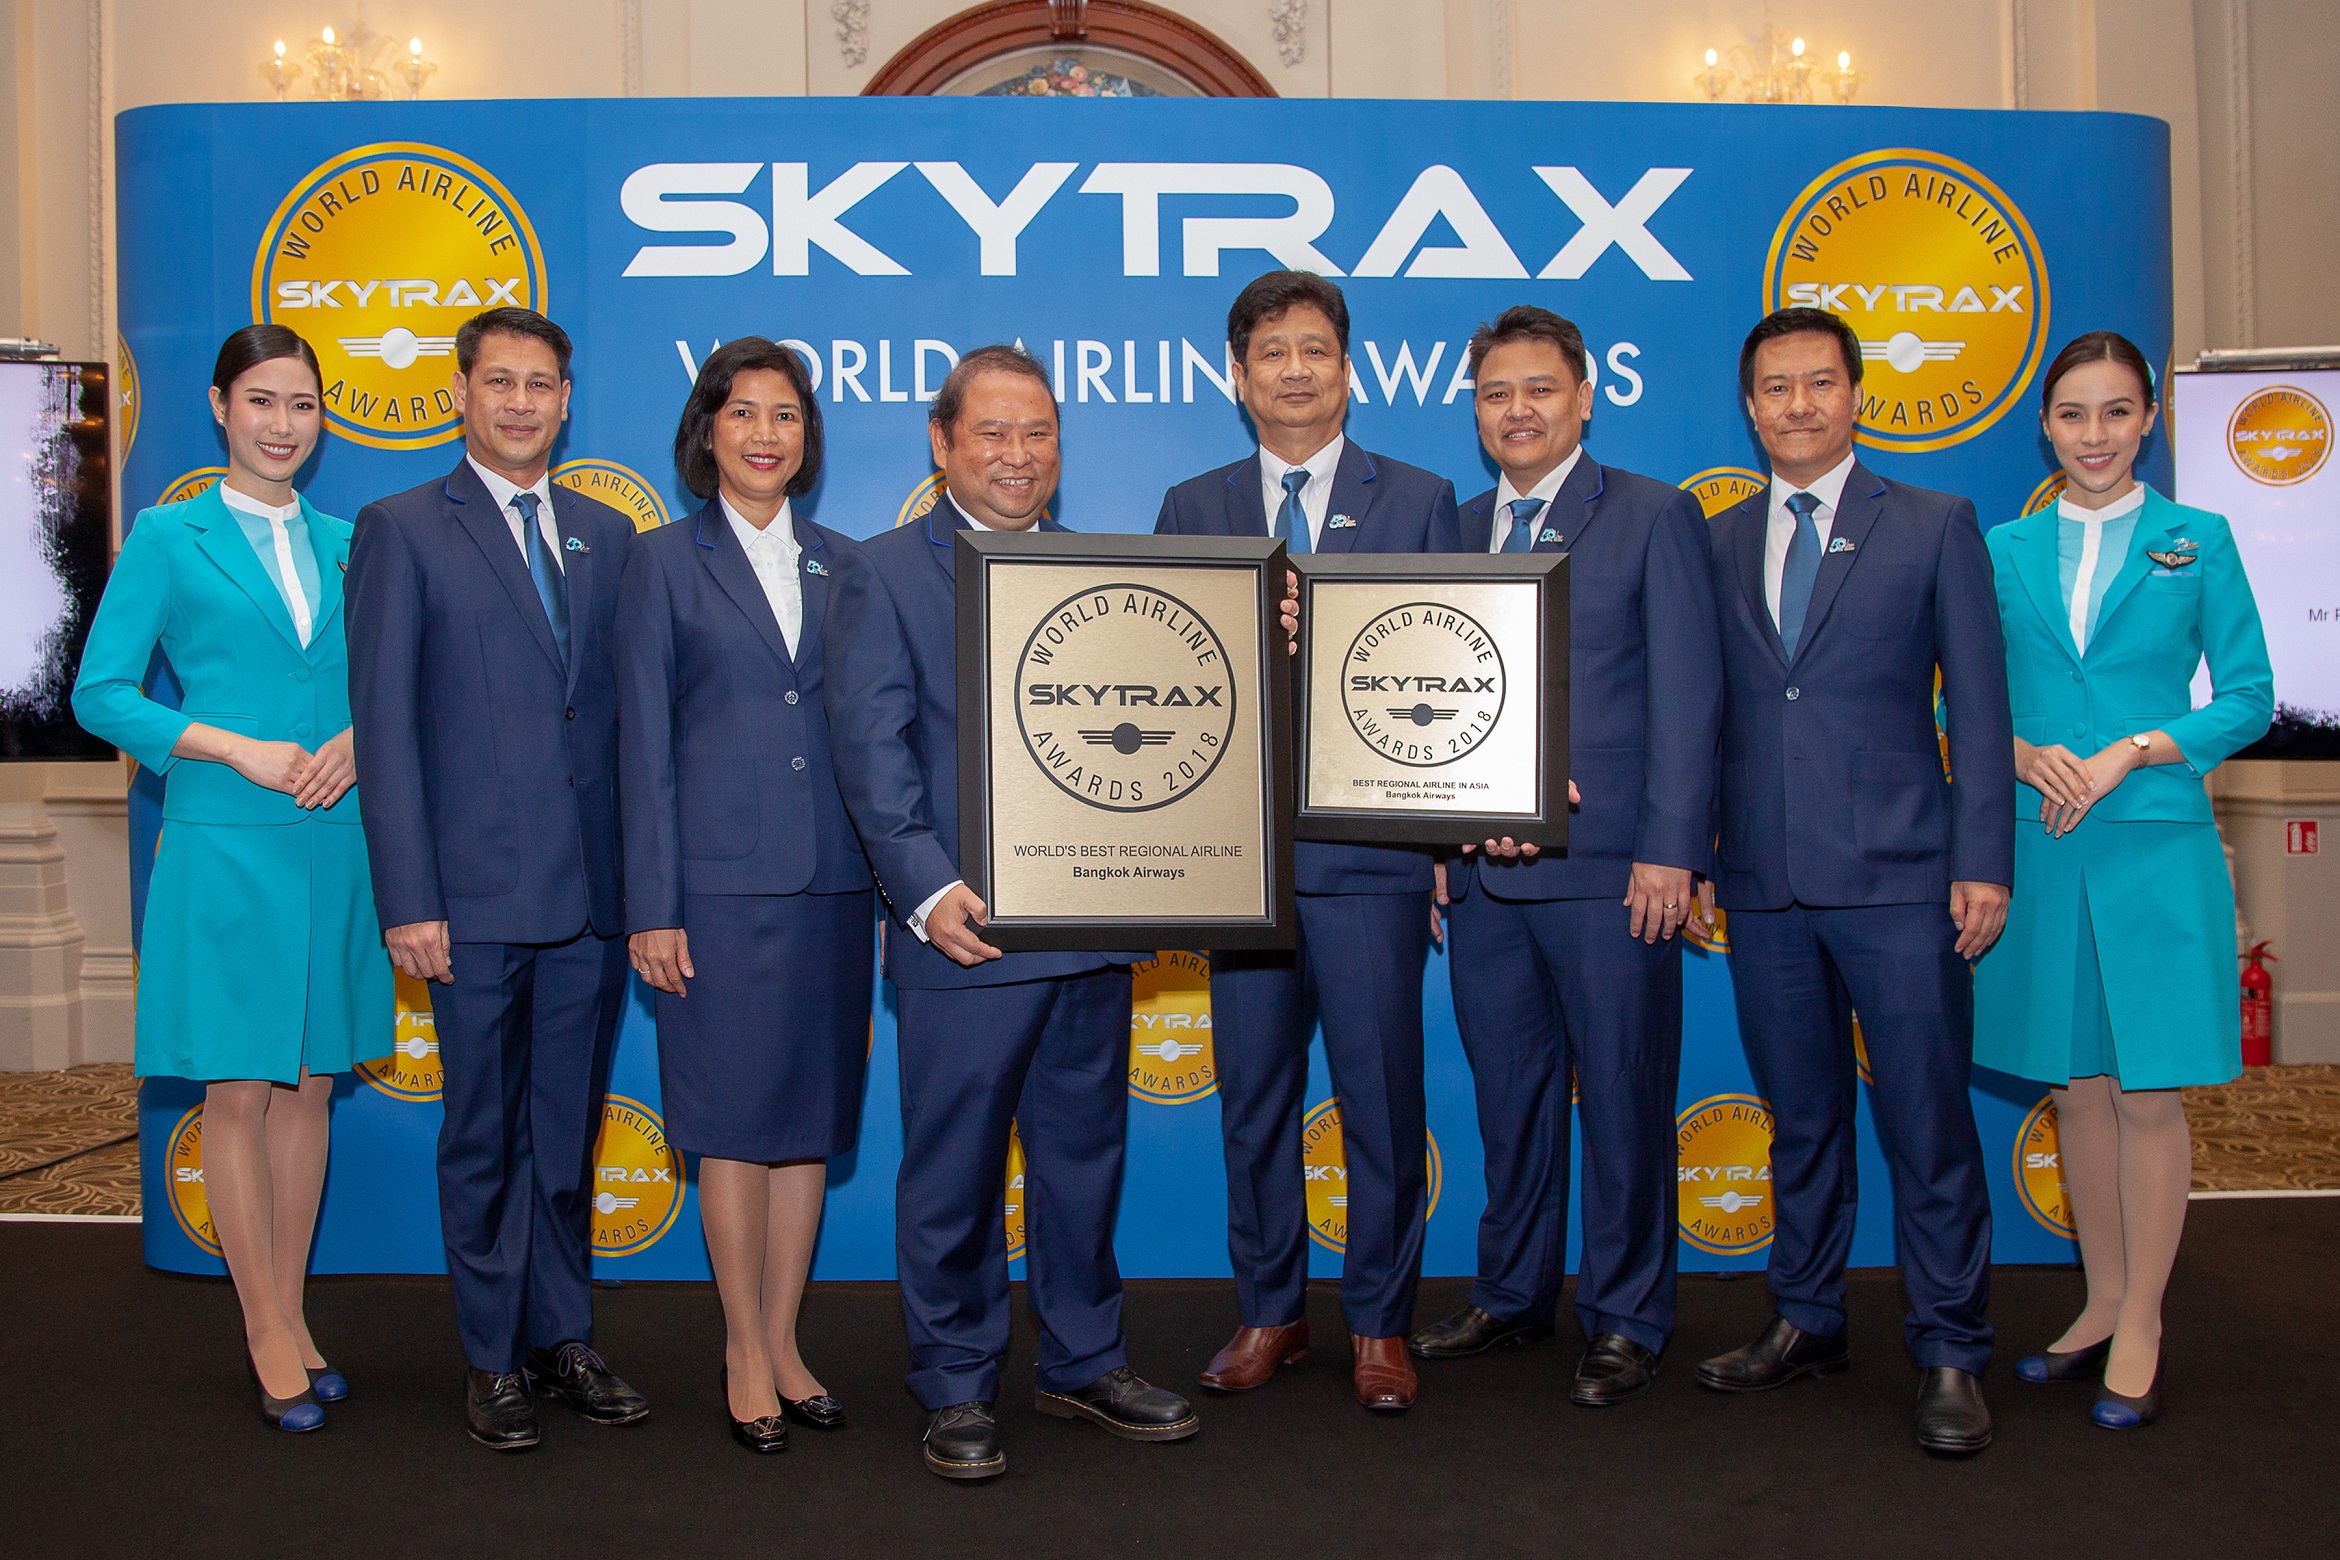  บางกอกแอร์เวย์สคว้า 2 รางวัล สายการบินภูมิภาคที่ดีที่สุดในโลกและดีที่สุดในเอเชีย จากการประกาศผลรางวัล สกายแทร็กซ์ เวิลด์ แอร์ไลน์ อวอร์ด ประจำปี 2561